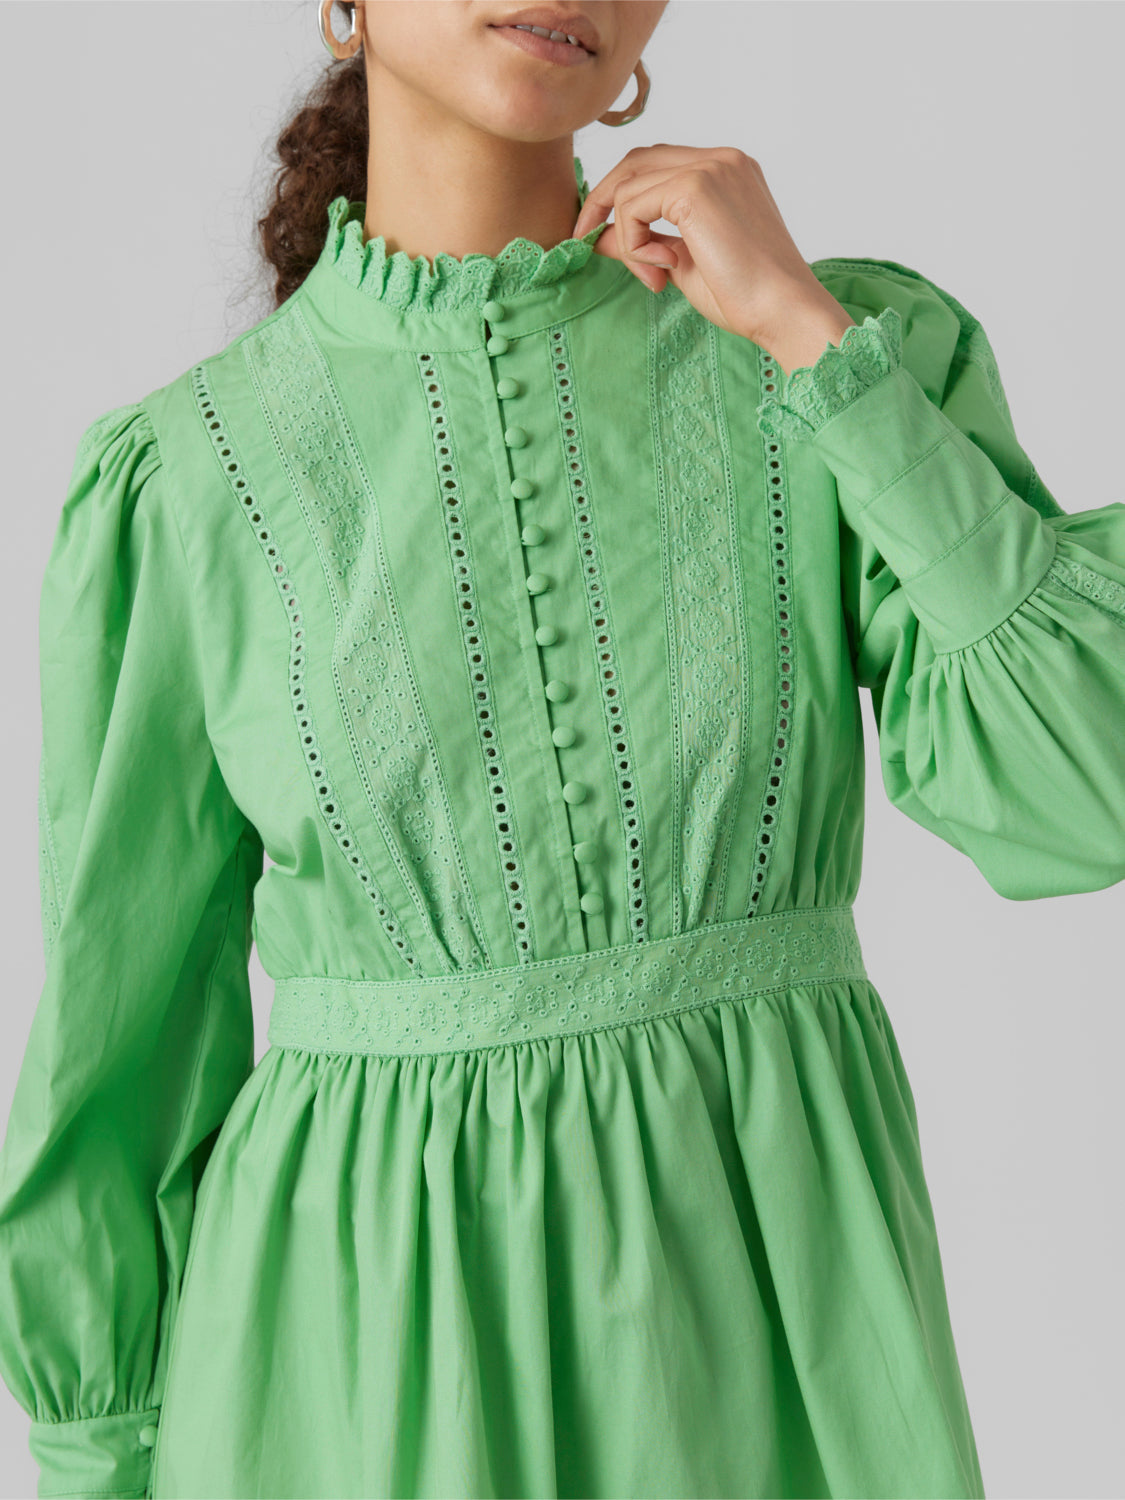 VMNOVA Dress - Absinthe Green